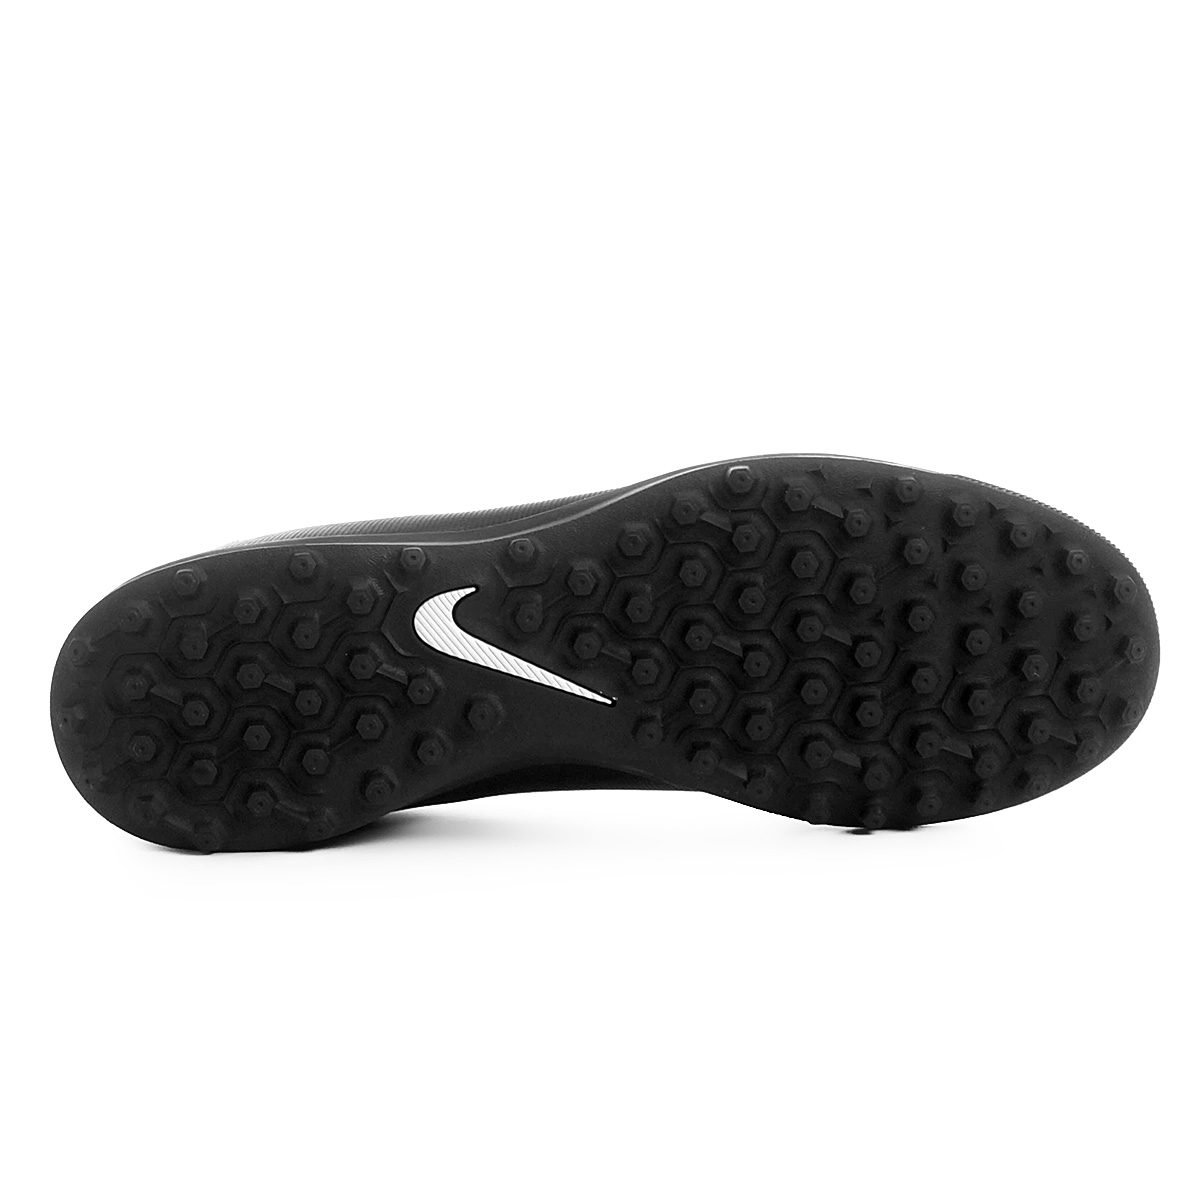 Chuteira Nike Bravatax II TF